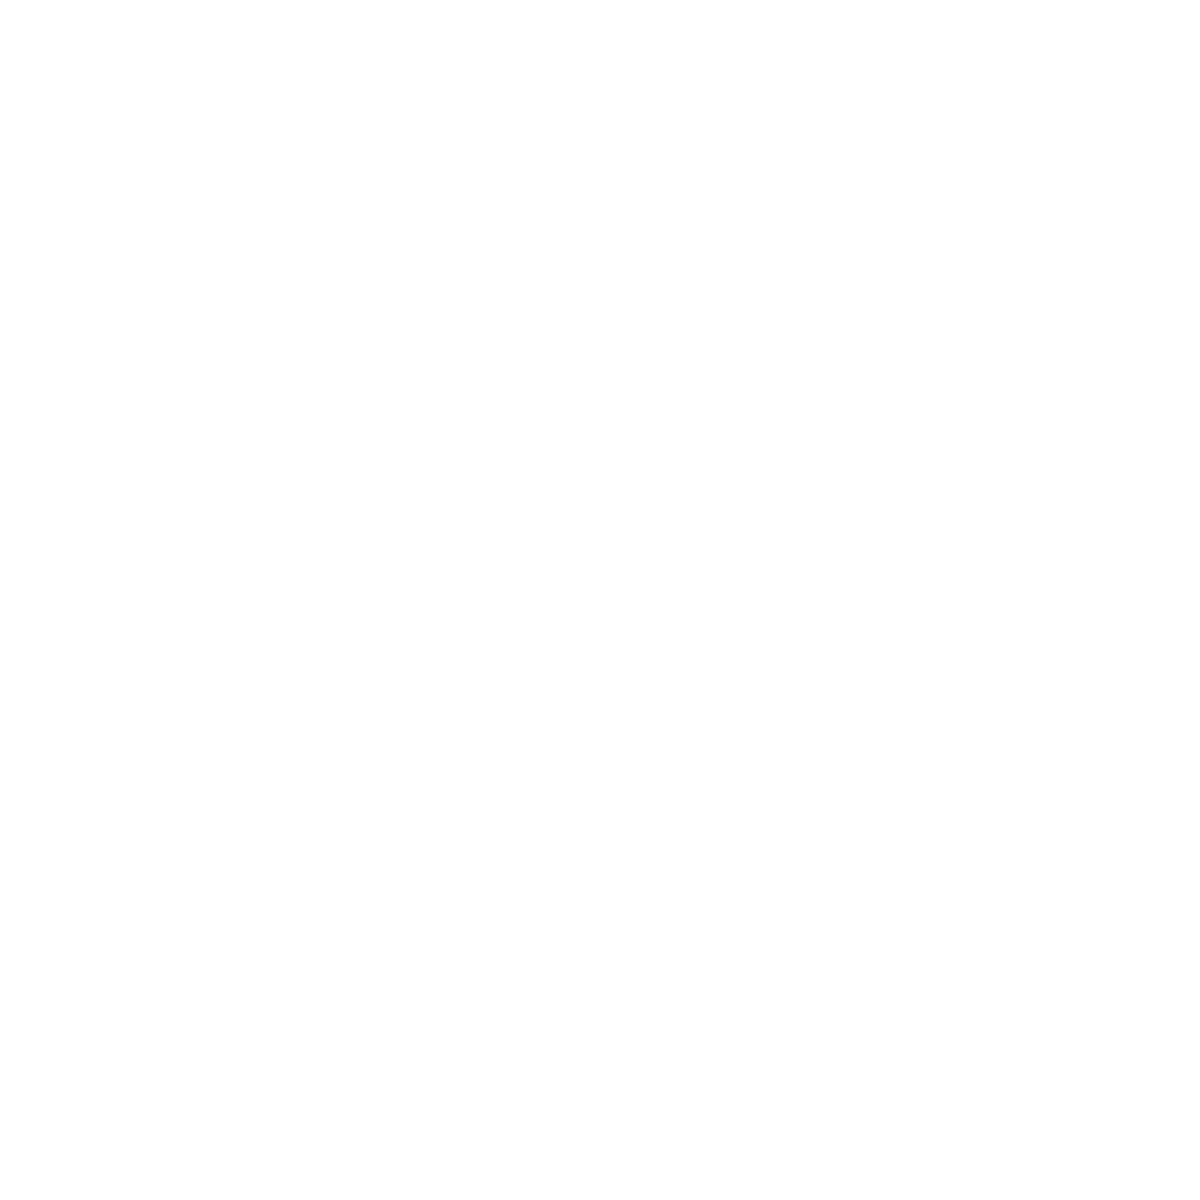 West Site Fitness Club Skierniewice